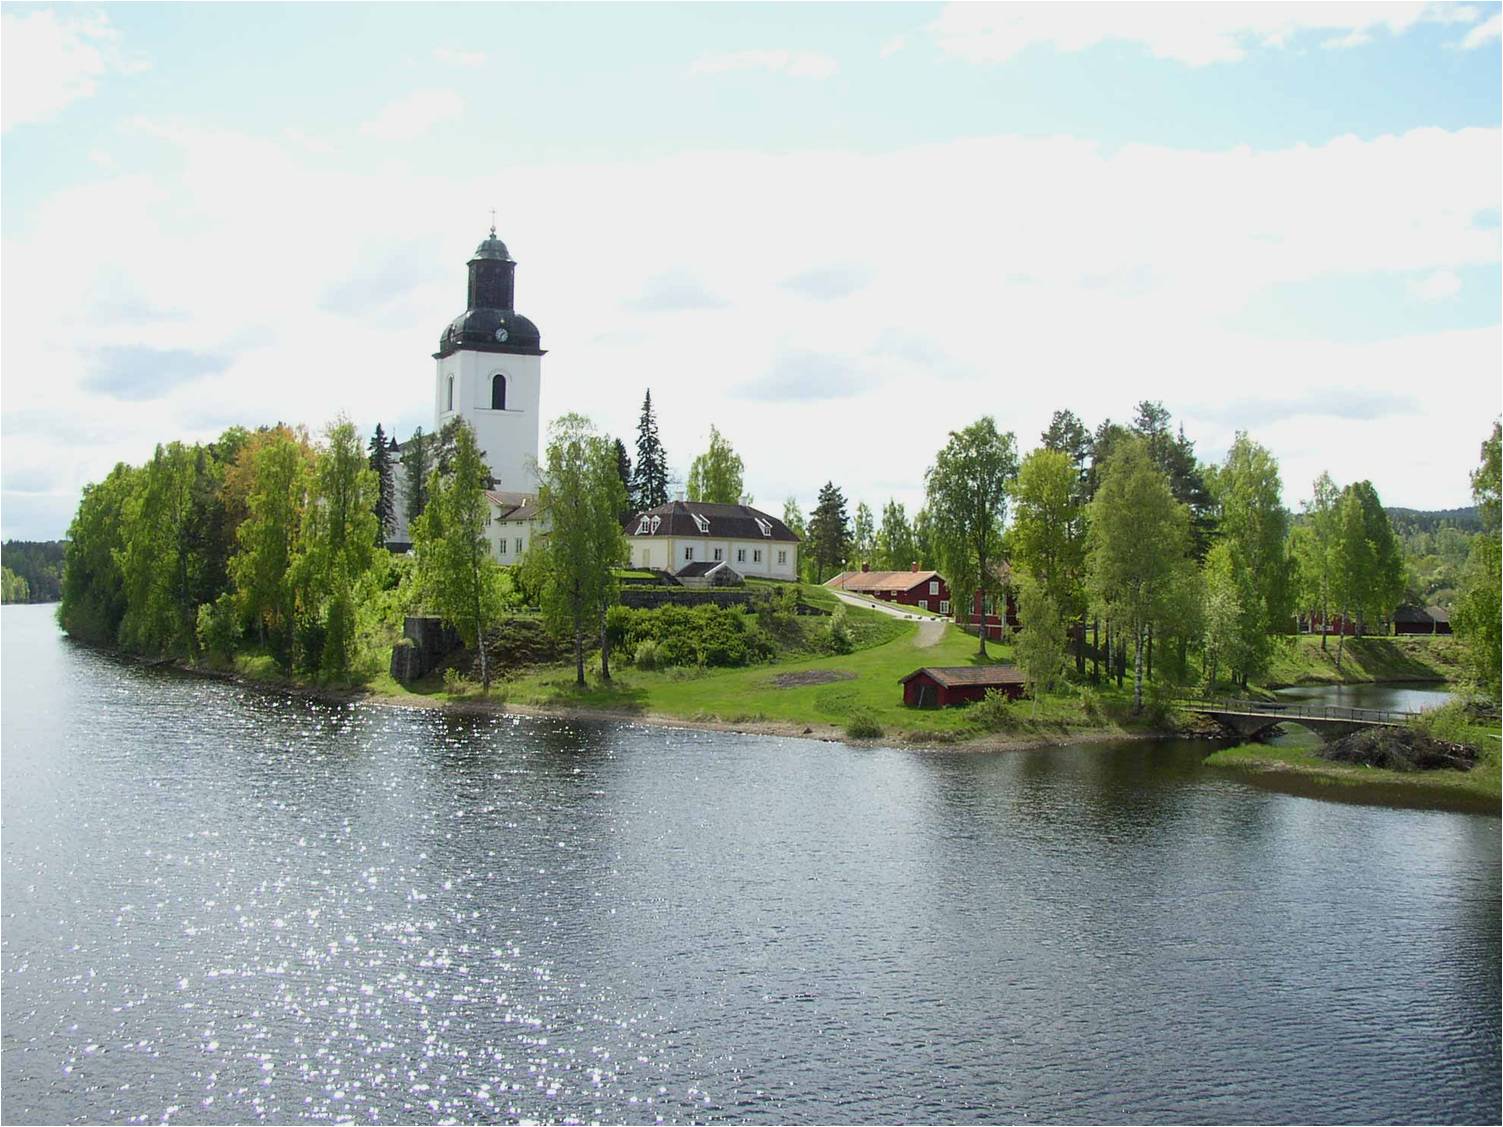 Kyrkön i Järvsö med kyrkan samt prästgården från bron över Ljusnan i nordost. 